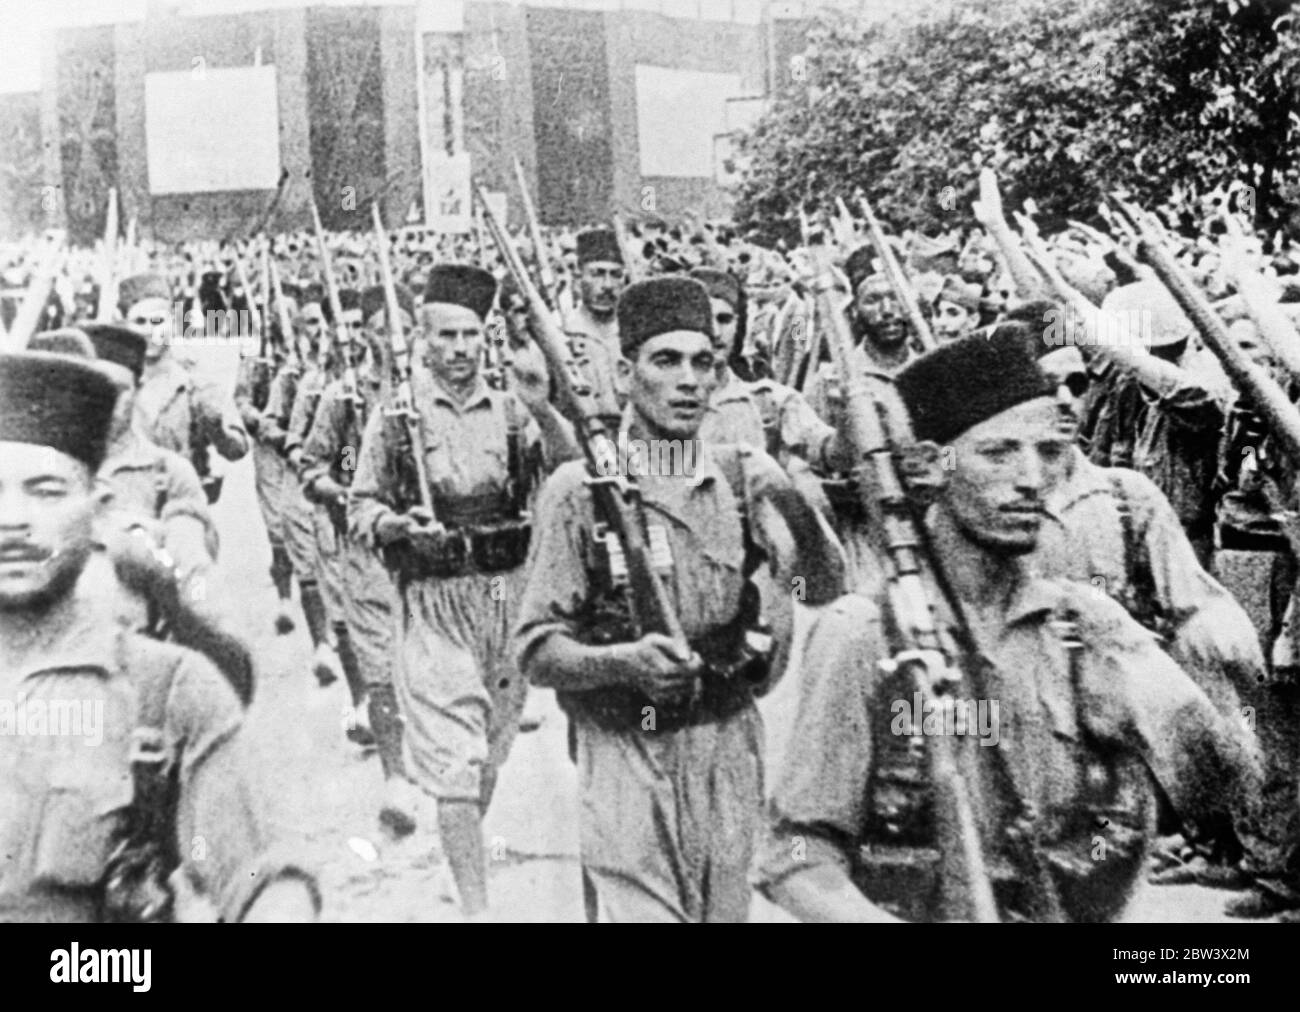 Plus de troupes marocaines quittent Burgos pour le front de guerre civile. Une attaque contre Madrid est attendue. D'importants détachements de troupes marocaines et de légionnaires étrangers ont quitté Burgos , le quartier général des rebelles en Espagne pour renforcer les insurgés . On pense qu'ils doivent participer à la grande marche sur Madrid qui est actuellement organisée par le général Mola , chef rebelle du Nord . Photos : armes soulevées dans le salut fasciste alors que les troupes du Maroc marchaient hors de Burgos . 25 août 1936 Légende originale de négatif Banque D'Images